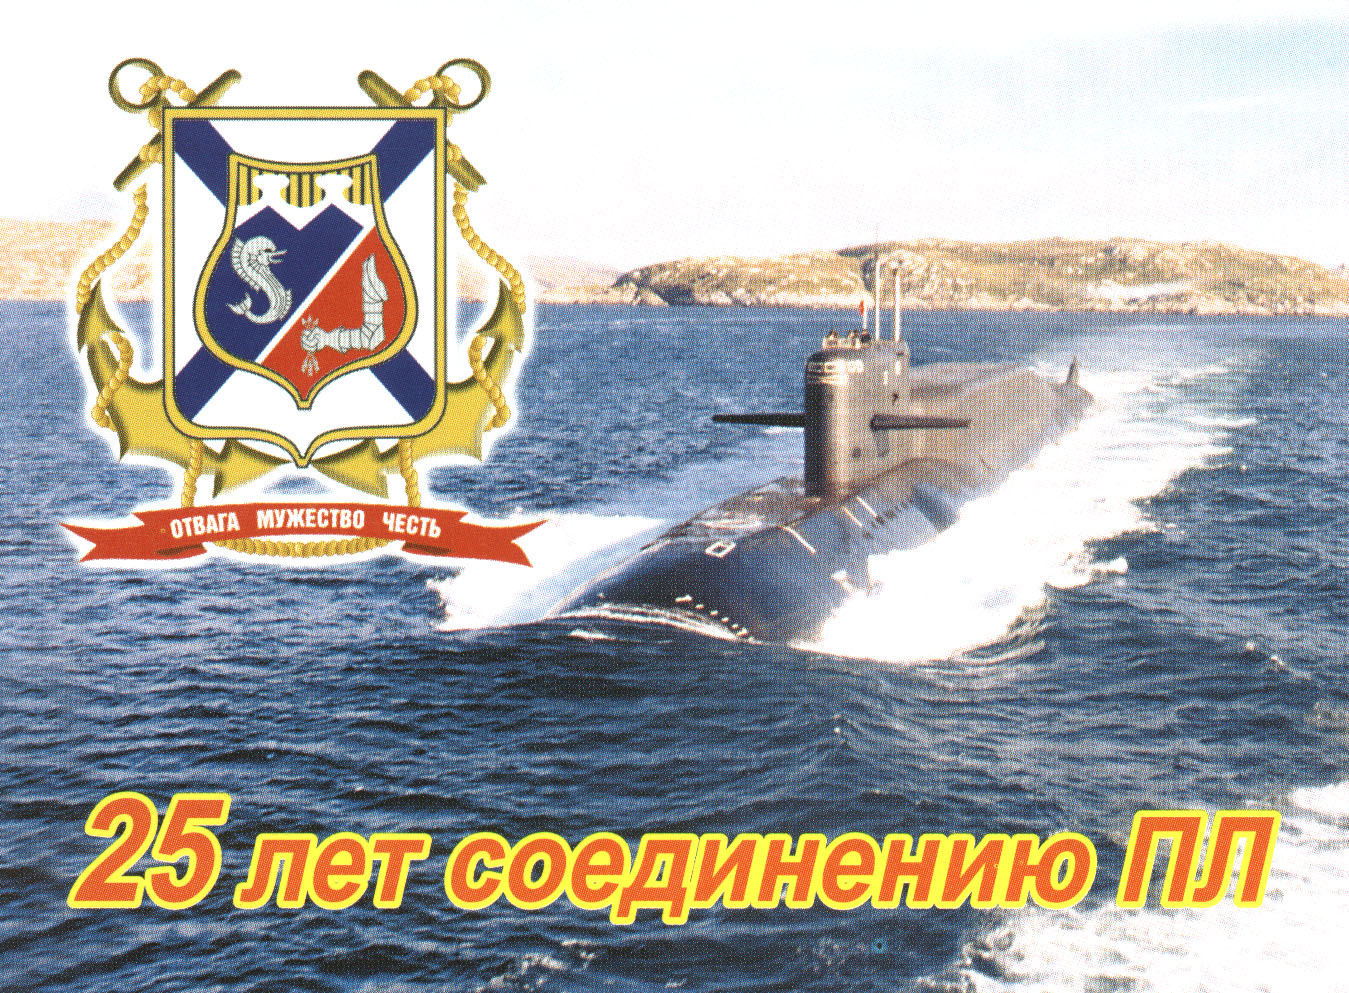 Северный флот ВМФ России эмблема